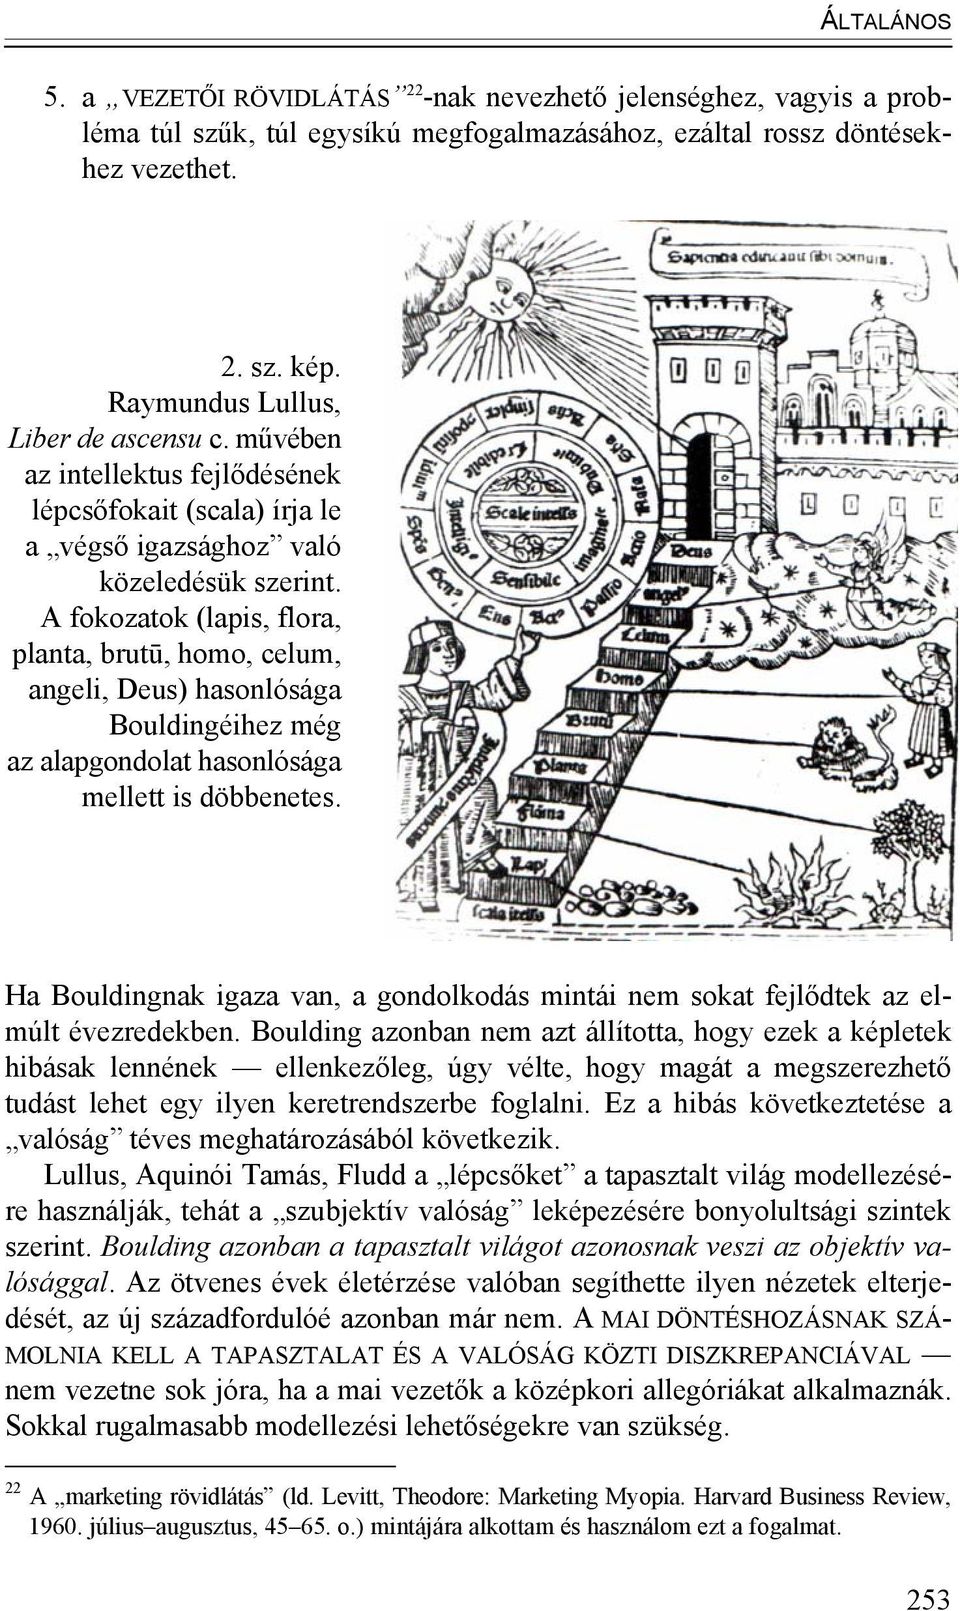 A fokozatok (lapis, flora, planta, brutū, homo, celum, angeli, Deus) hasonlósága Bouldingéihez még az alapgondolat hasonlósága mellett is döbbenetes.